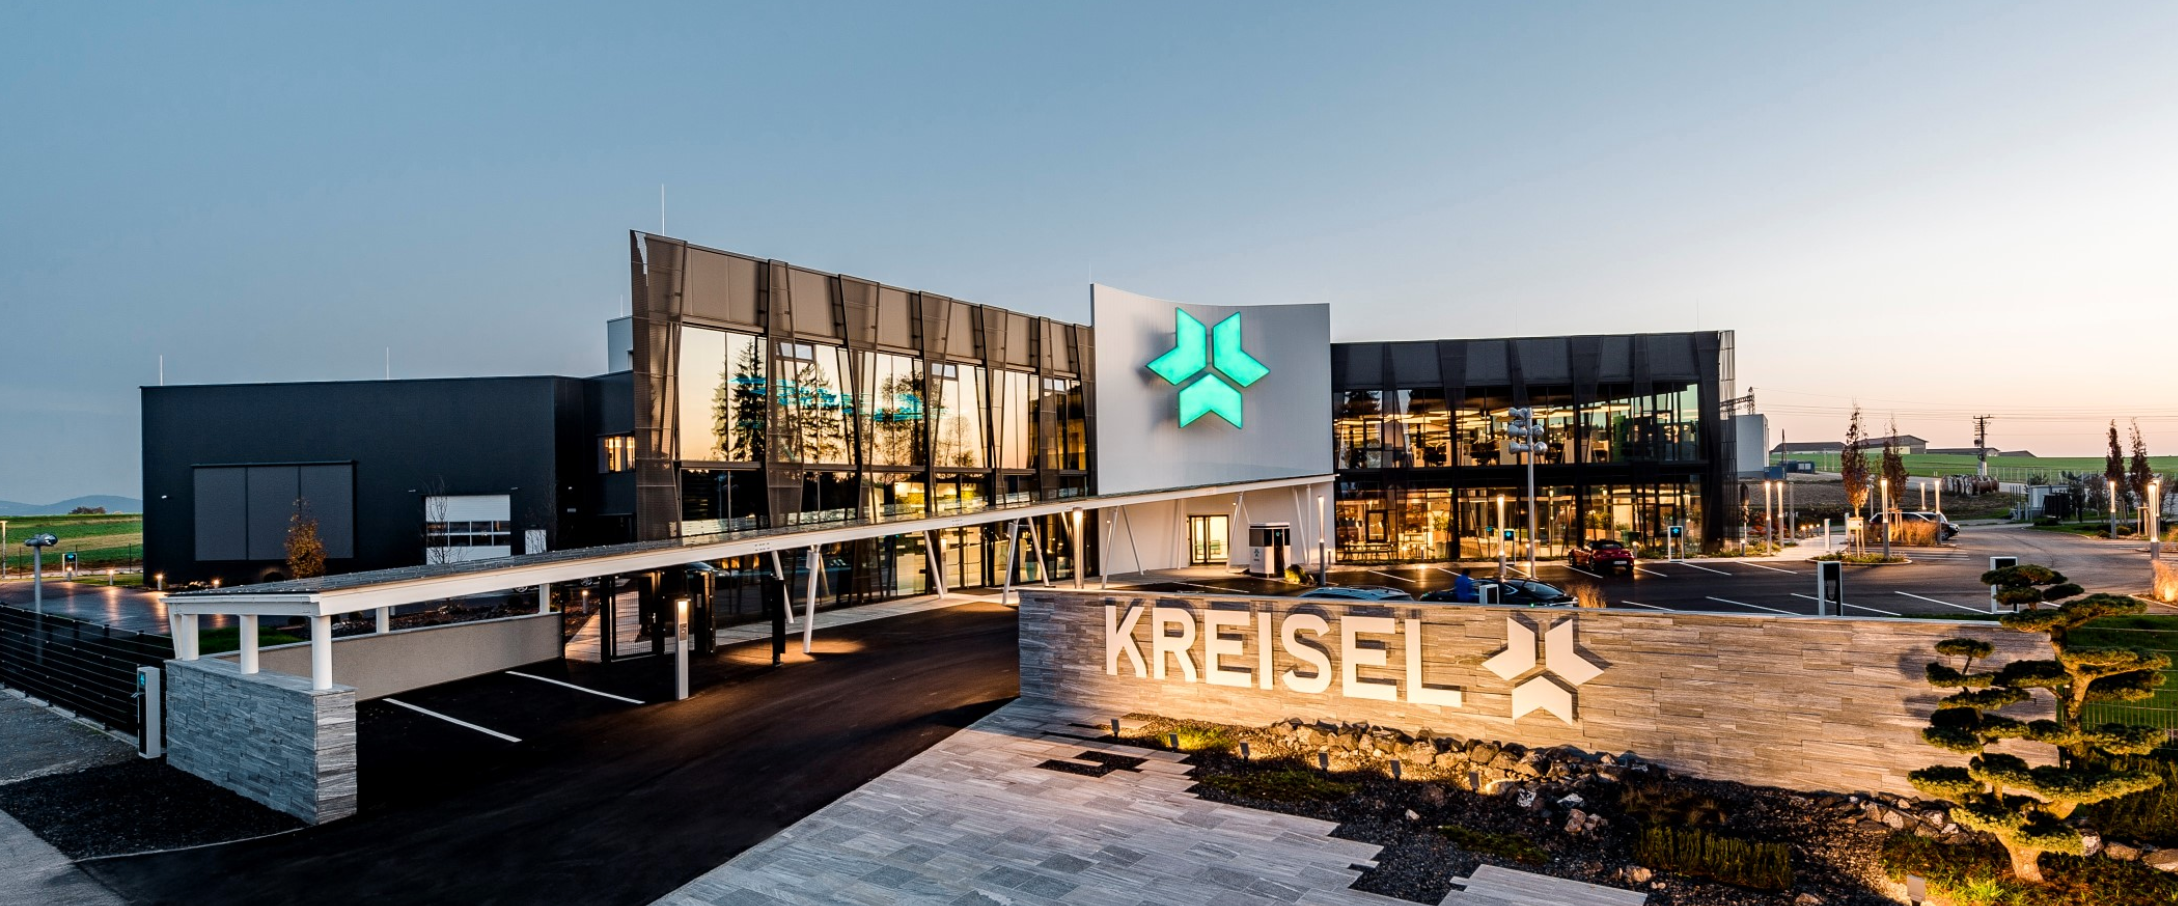 Kreisel energy, Kreisel headquarters, Kreisel Austria